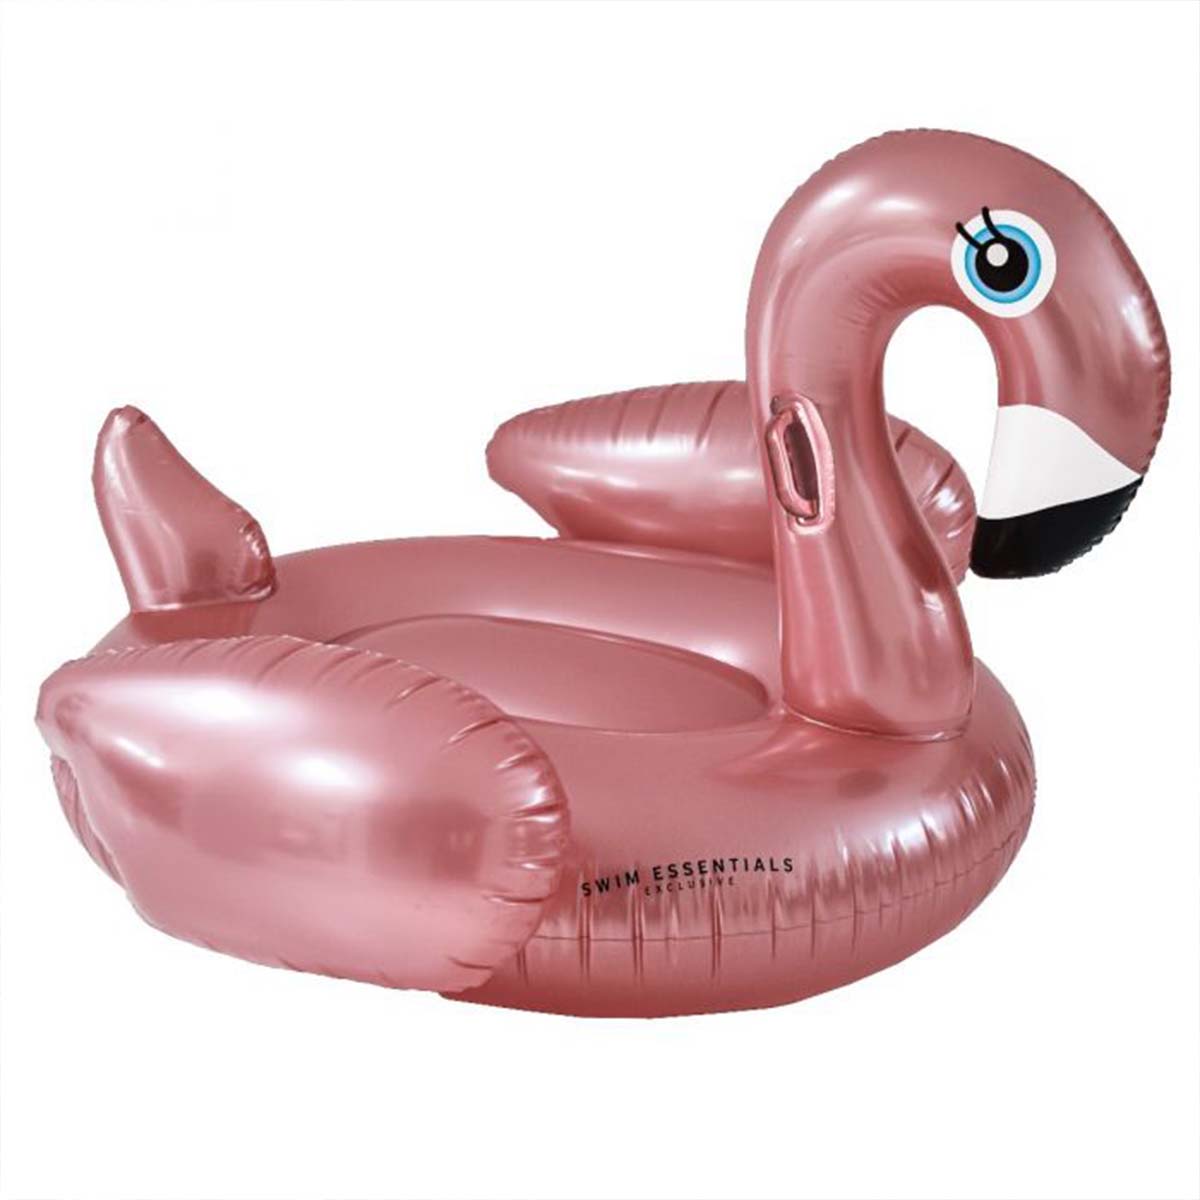 Het Swim Essentials luchtbed 150 cm rose gold swan is deze zomer de beste vriend van jouw kindje! Lekker de hele dag dobberen in het zwembad. Dankzij het XL formaat is dit luchtbed ook geschikt voor grotere kinderen. VanZus.